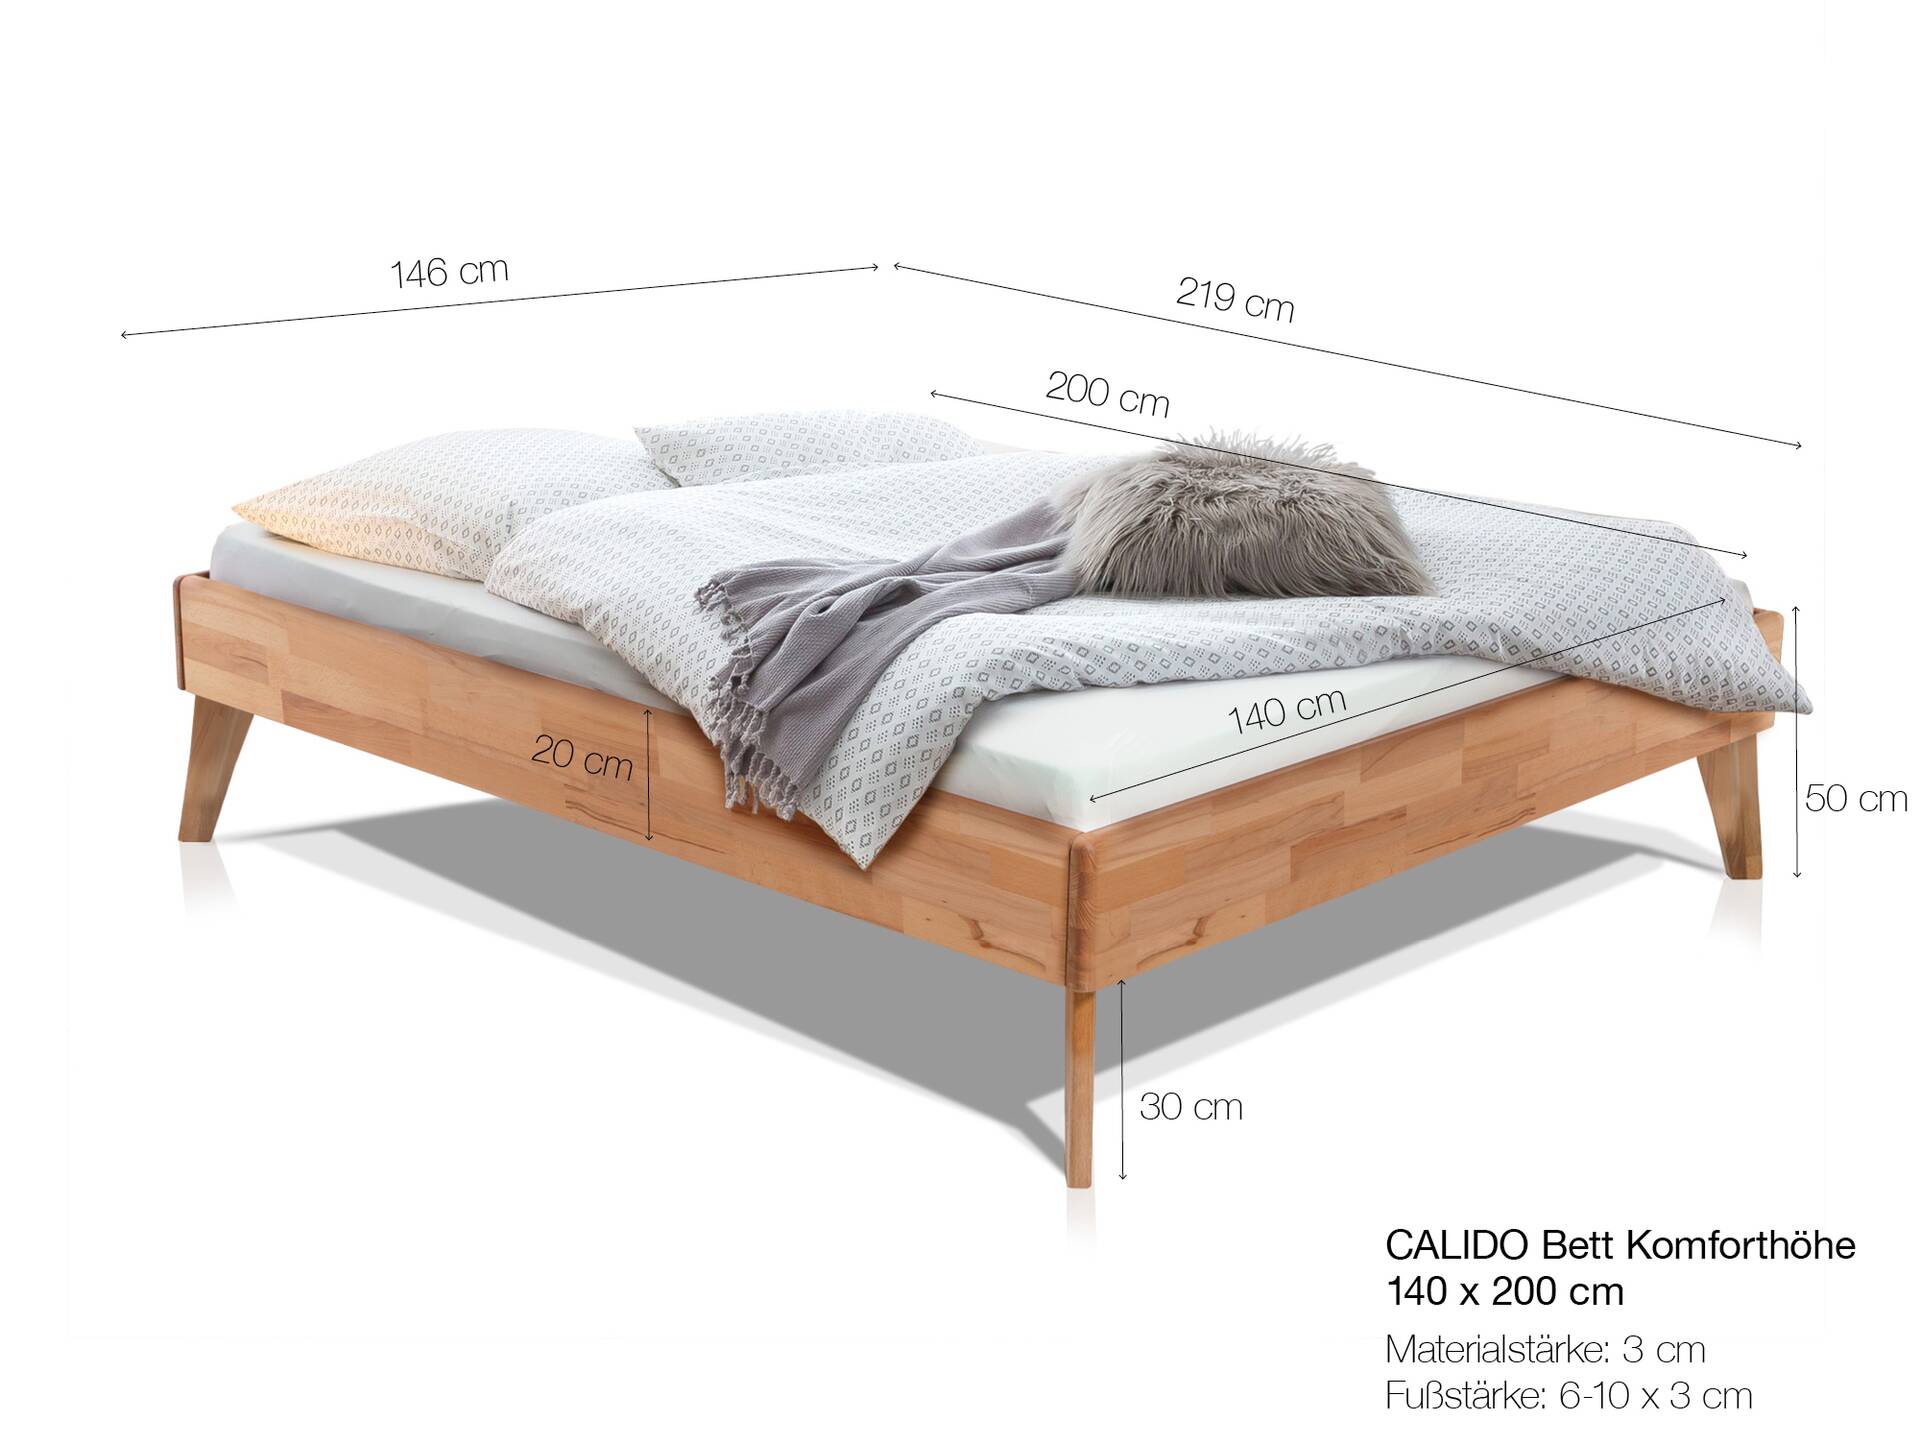 CALIDO 4-Fuß-Bett ohne Kopfteil, Material Massivholz 140 x 200 cm | Buche nussbaumfarbig gedämpft | Komforthöhe